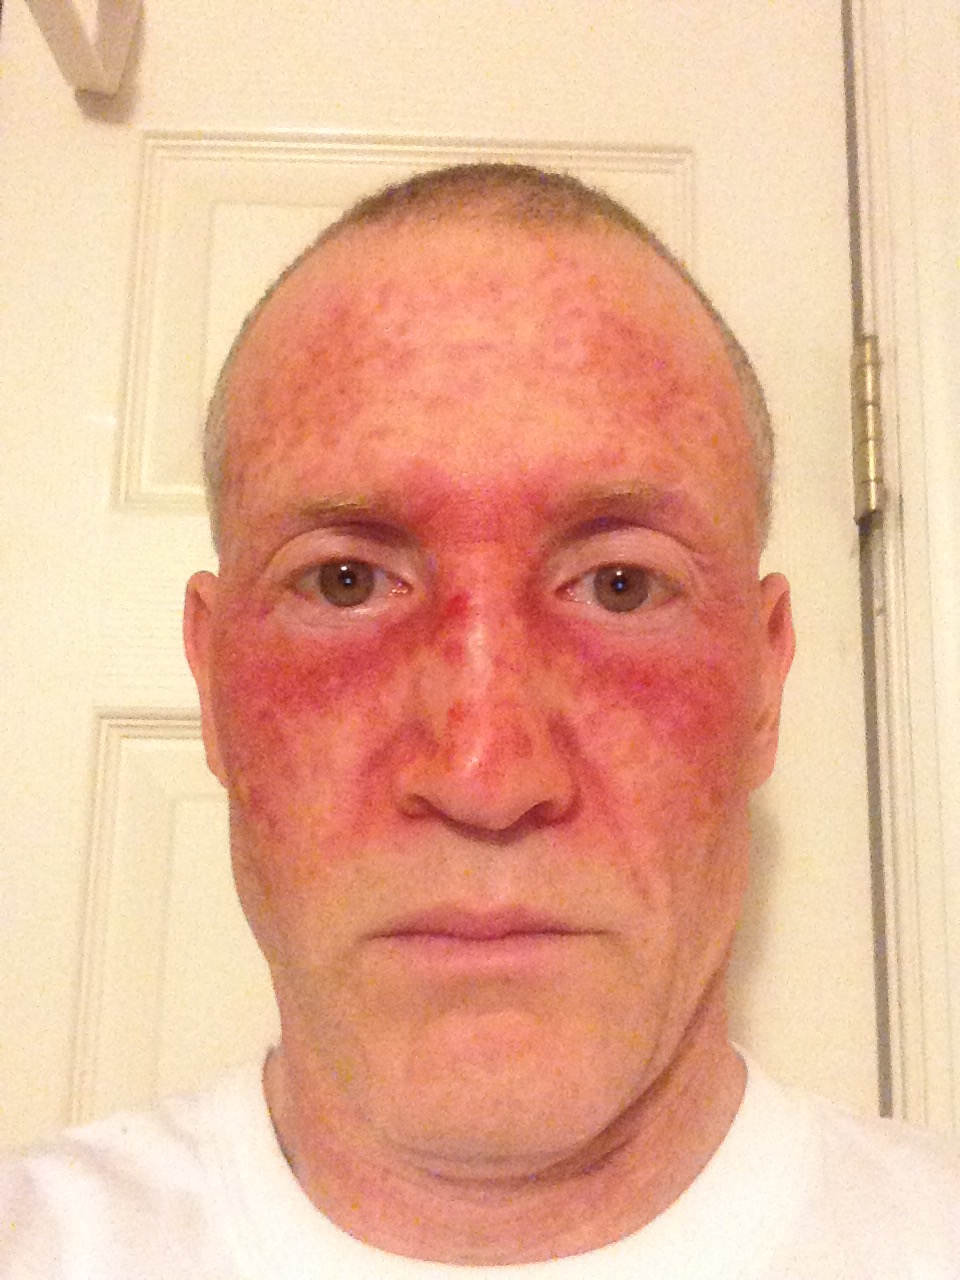 Facial redness skin